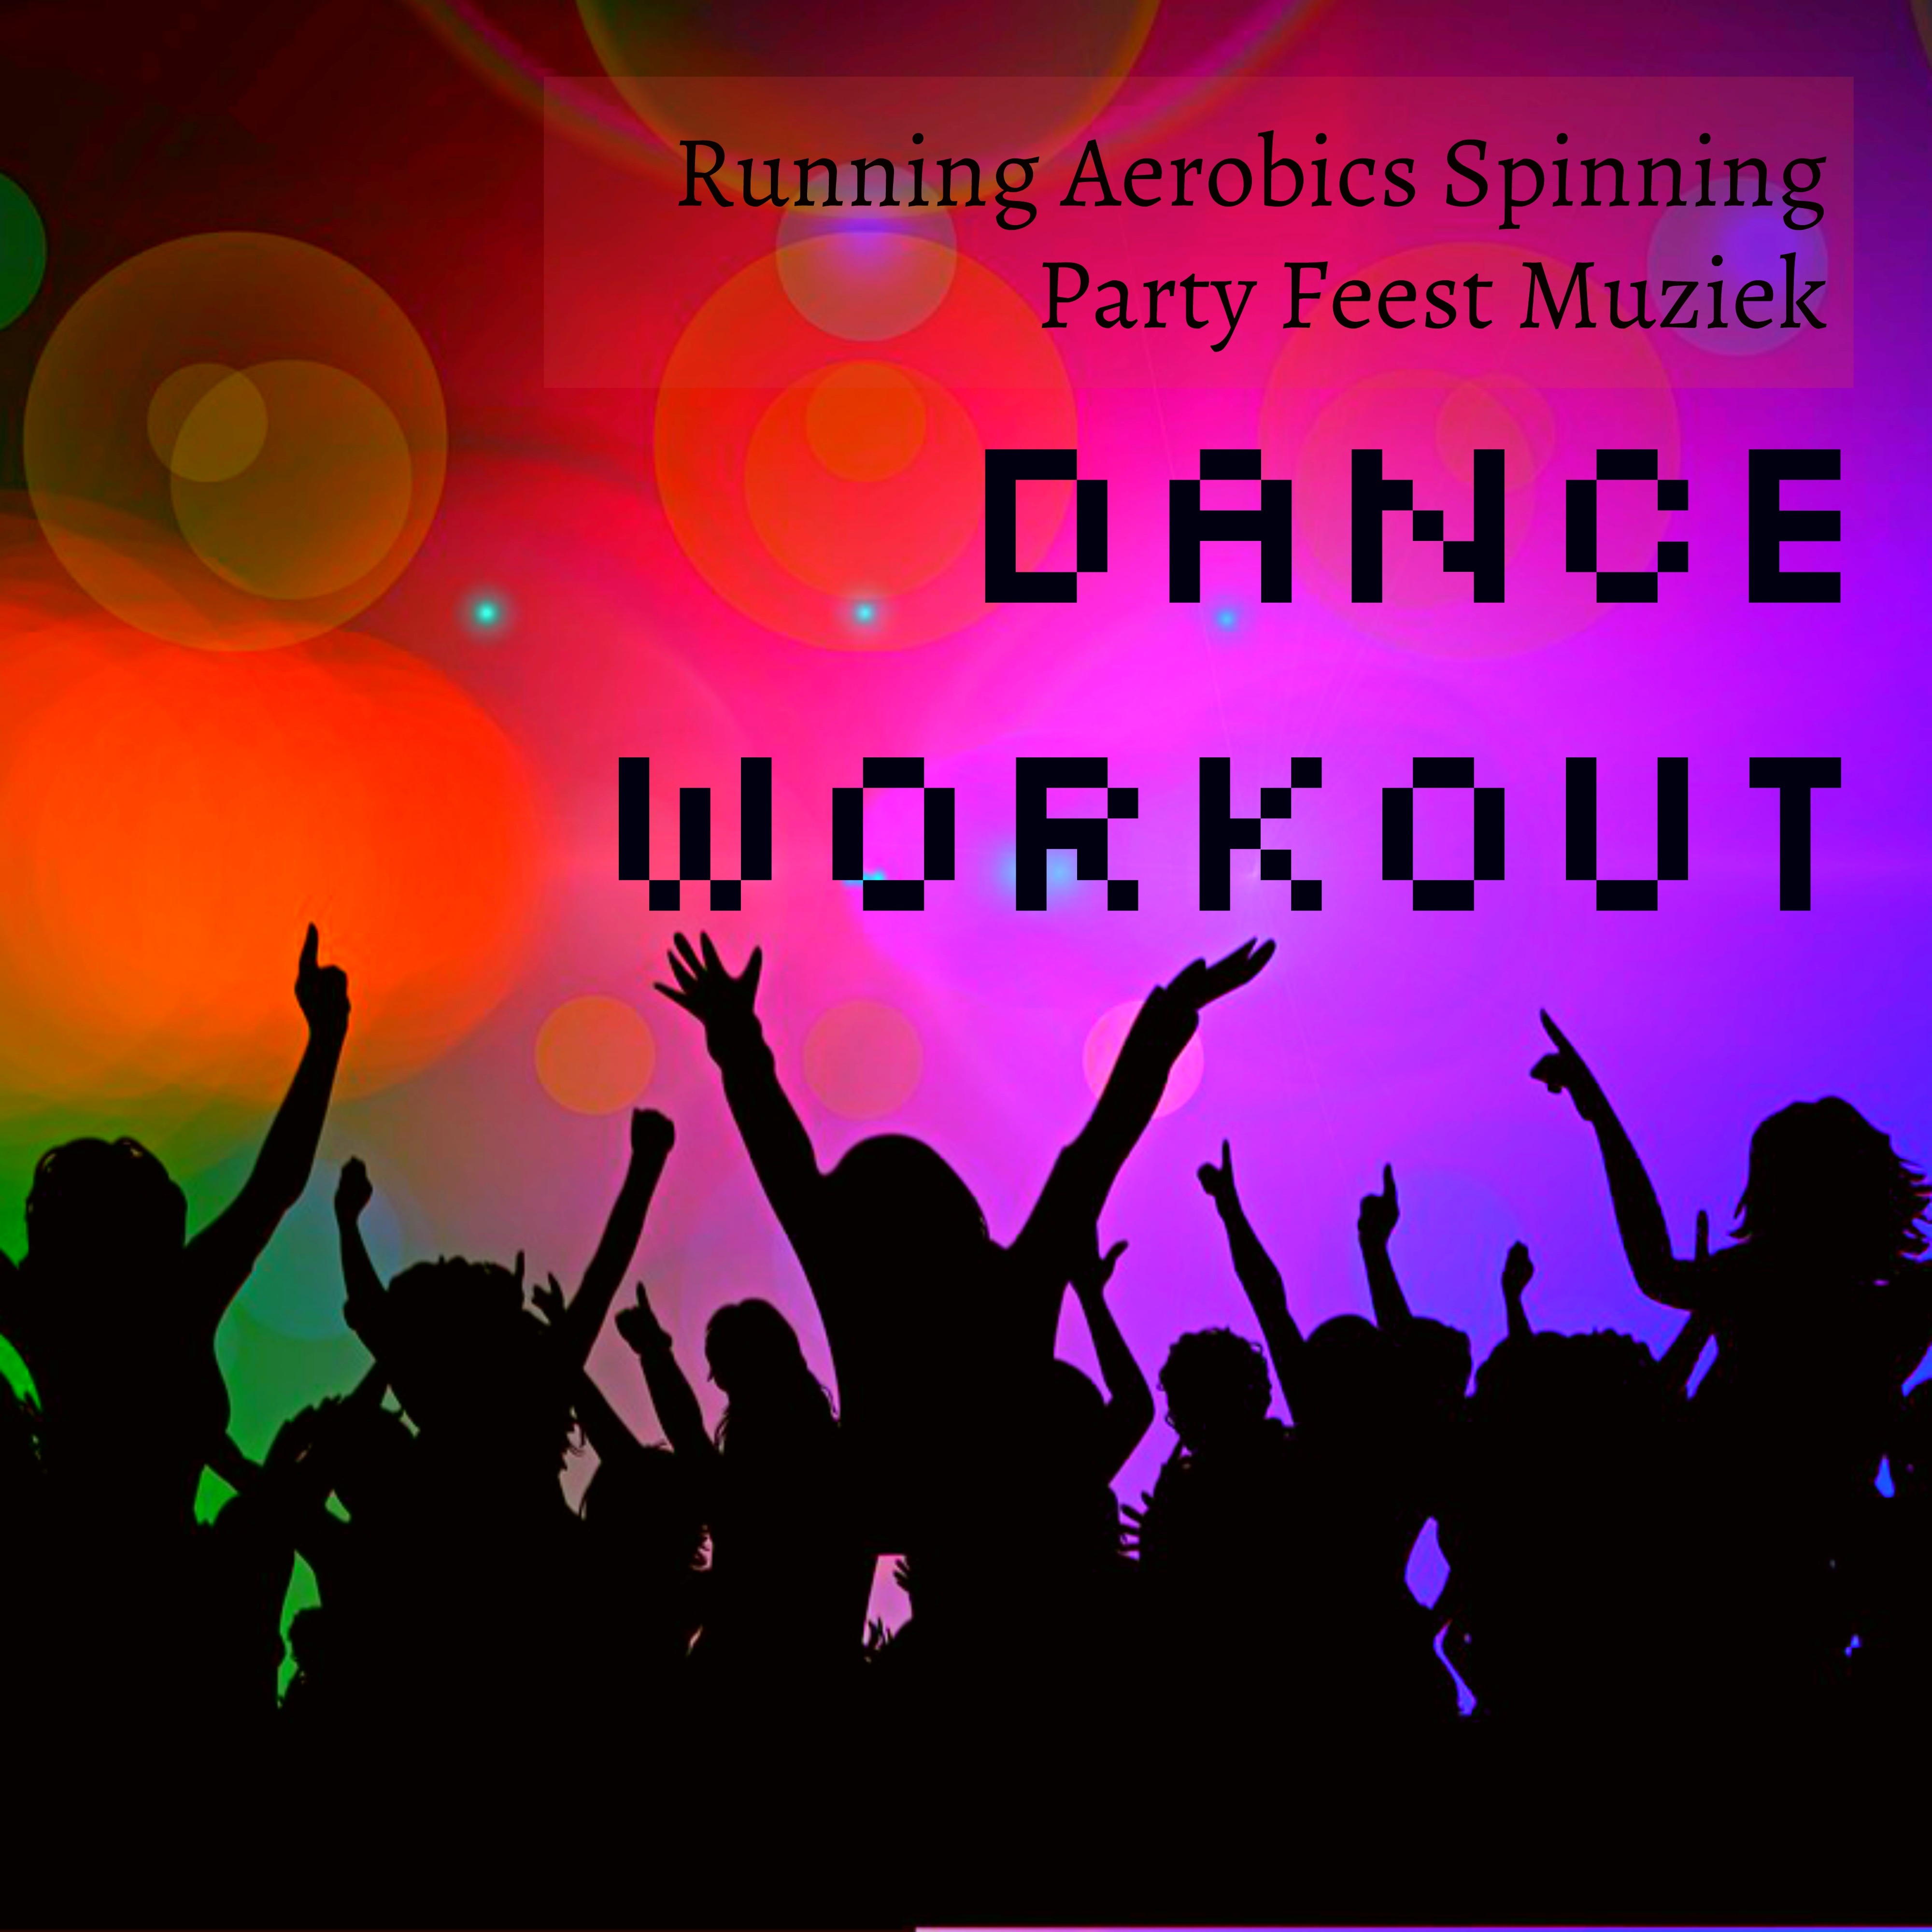 Dance Workout - Running Aerobics Spinning Party Feest Muziek voor Stress Verminderen en Spiermassa Verbeteren